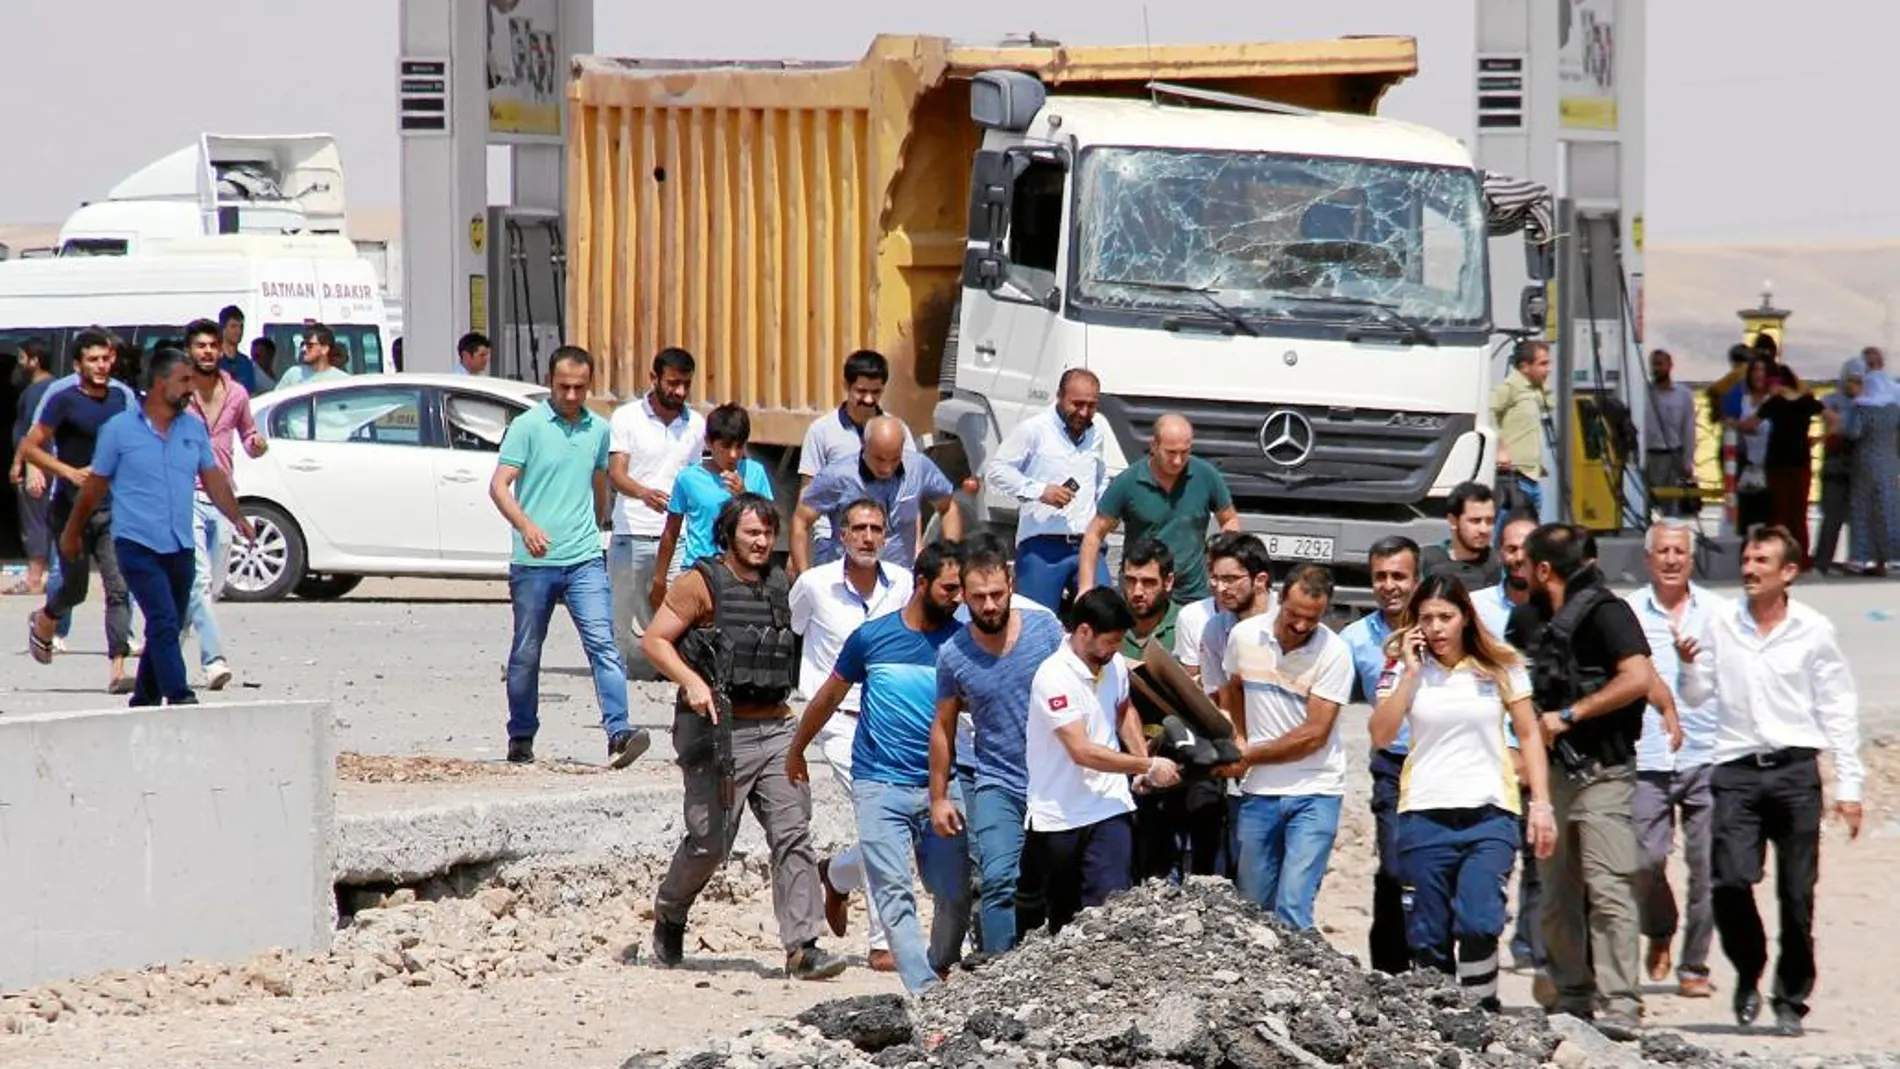 Nuevos ataques. Varios turcos ayudan a los heridos tras una explosión cerca de una comisaría de Policía en la ciudad de Diyarbakir, al suroeste del país. En el atentado fallecieron dos agentes de policía y un civil, lo que aumenta la preocupación entre la población ante los múltiples ataques que vive Turquía